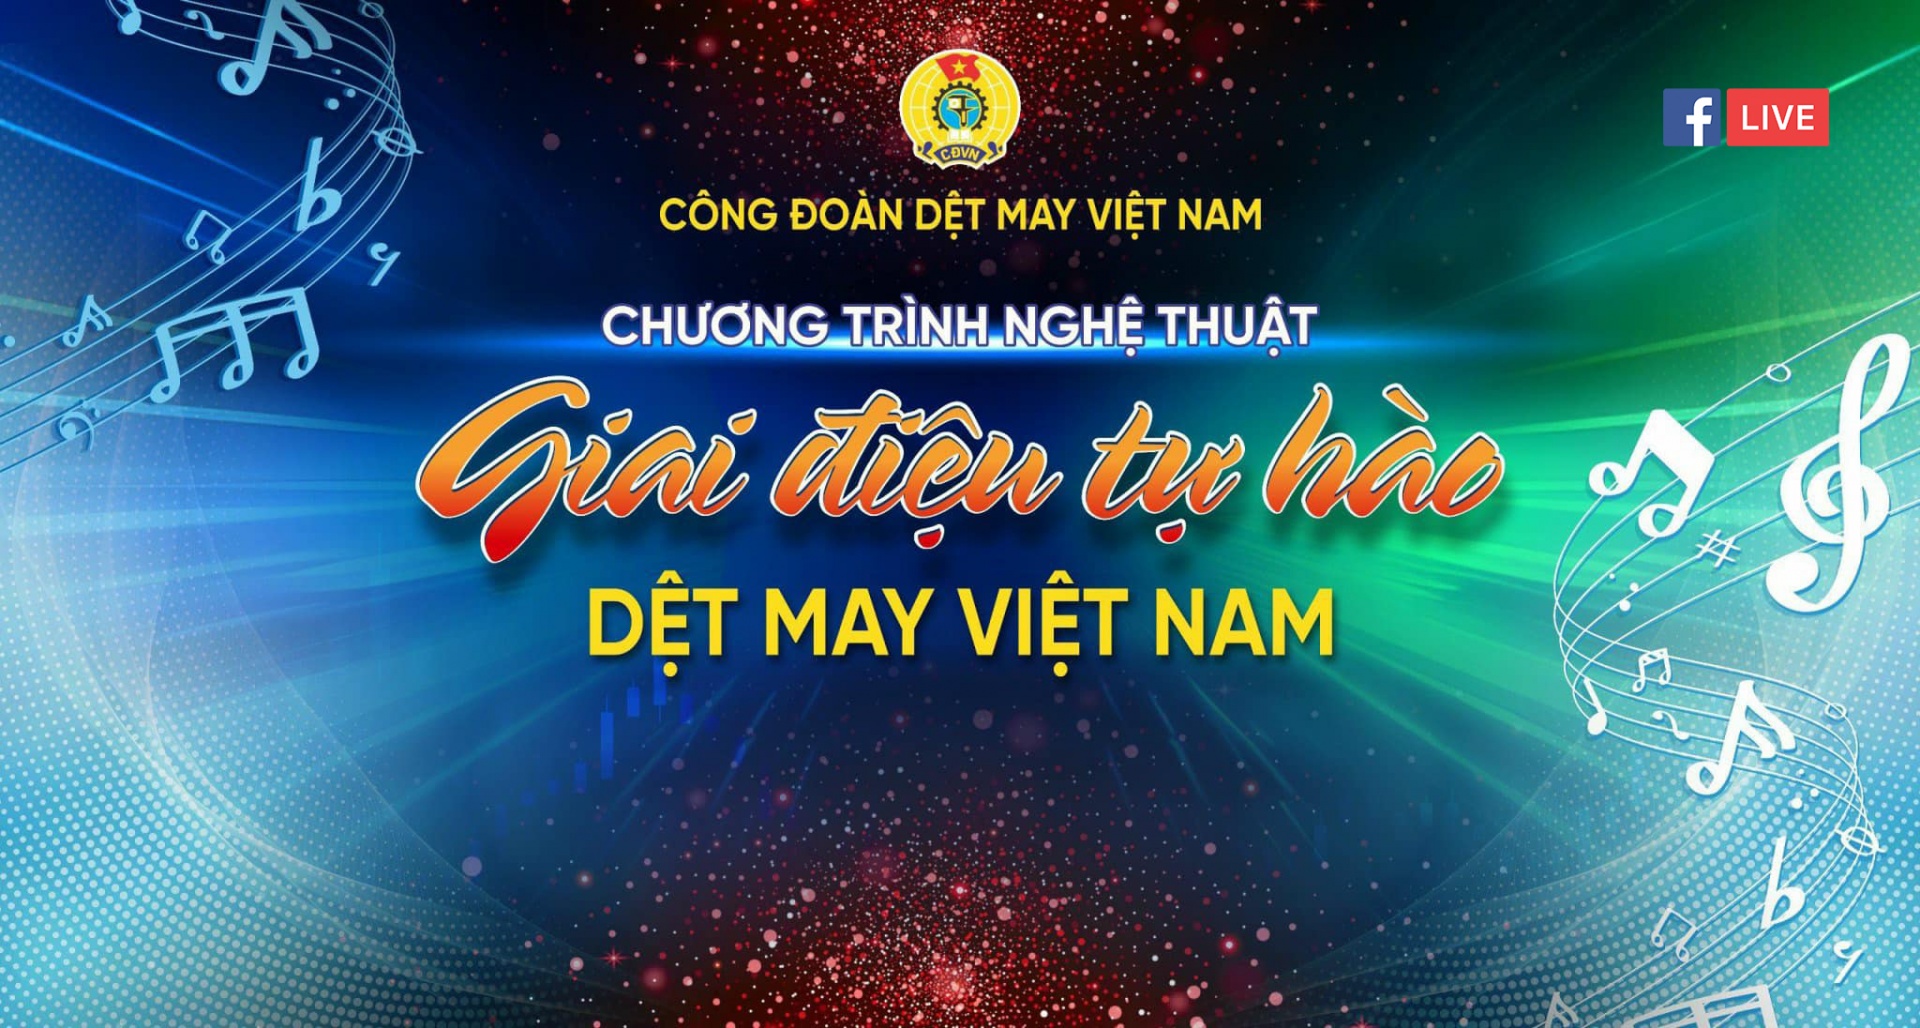 Chương trình Nghệ thuật Giai điệu tự hào Dệt may Việt Nam